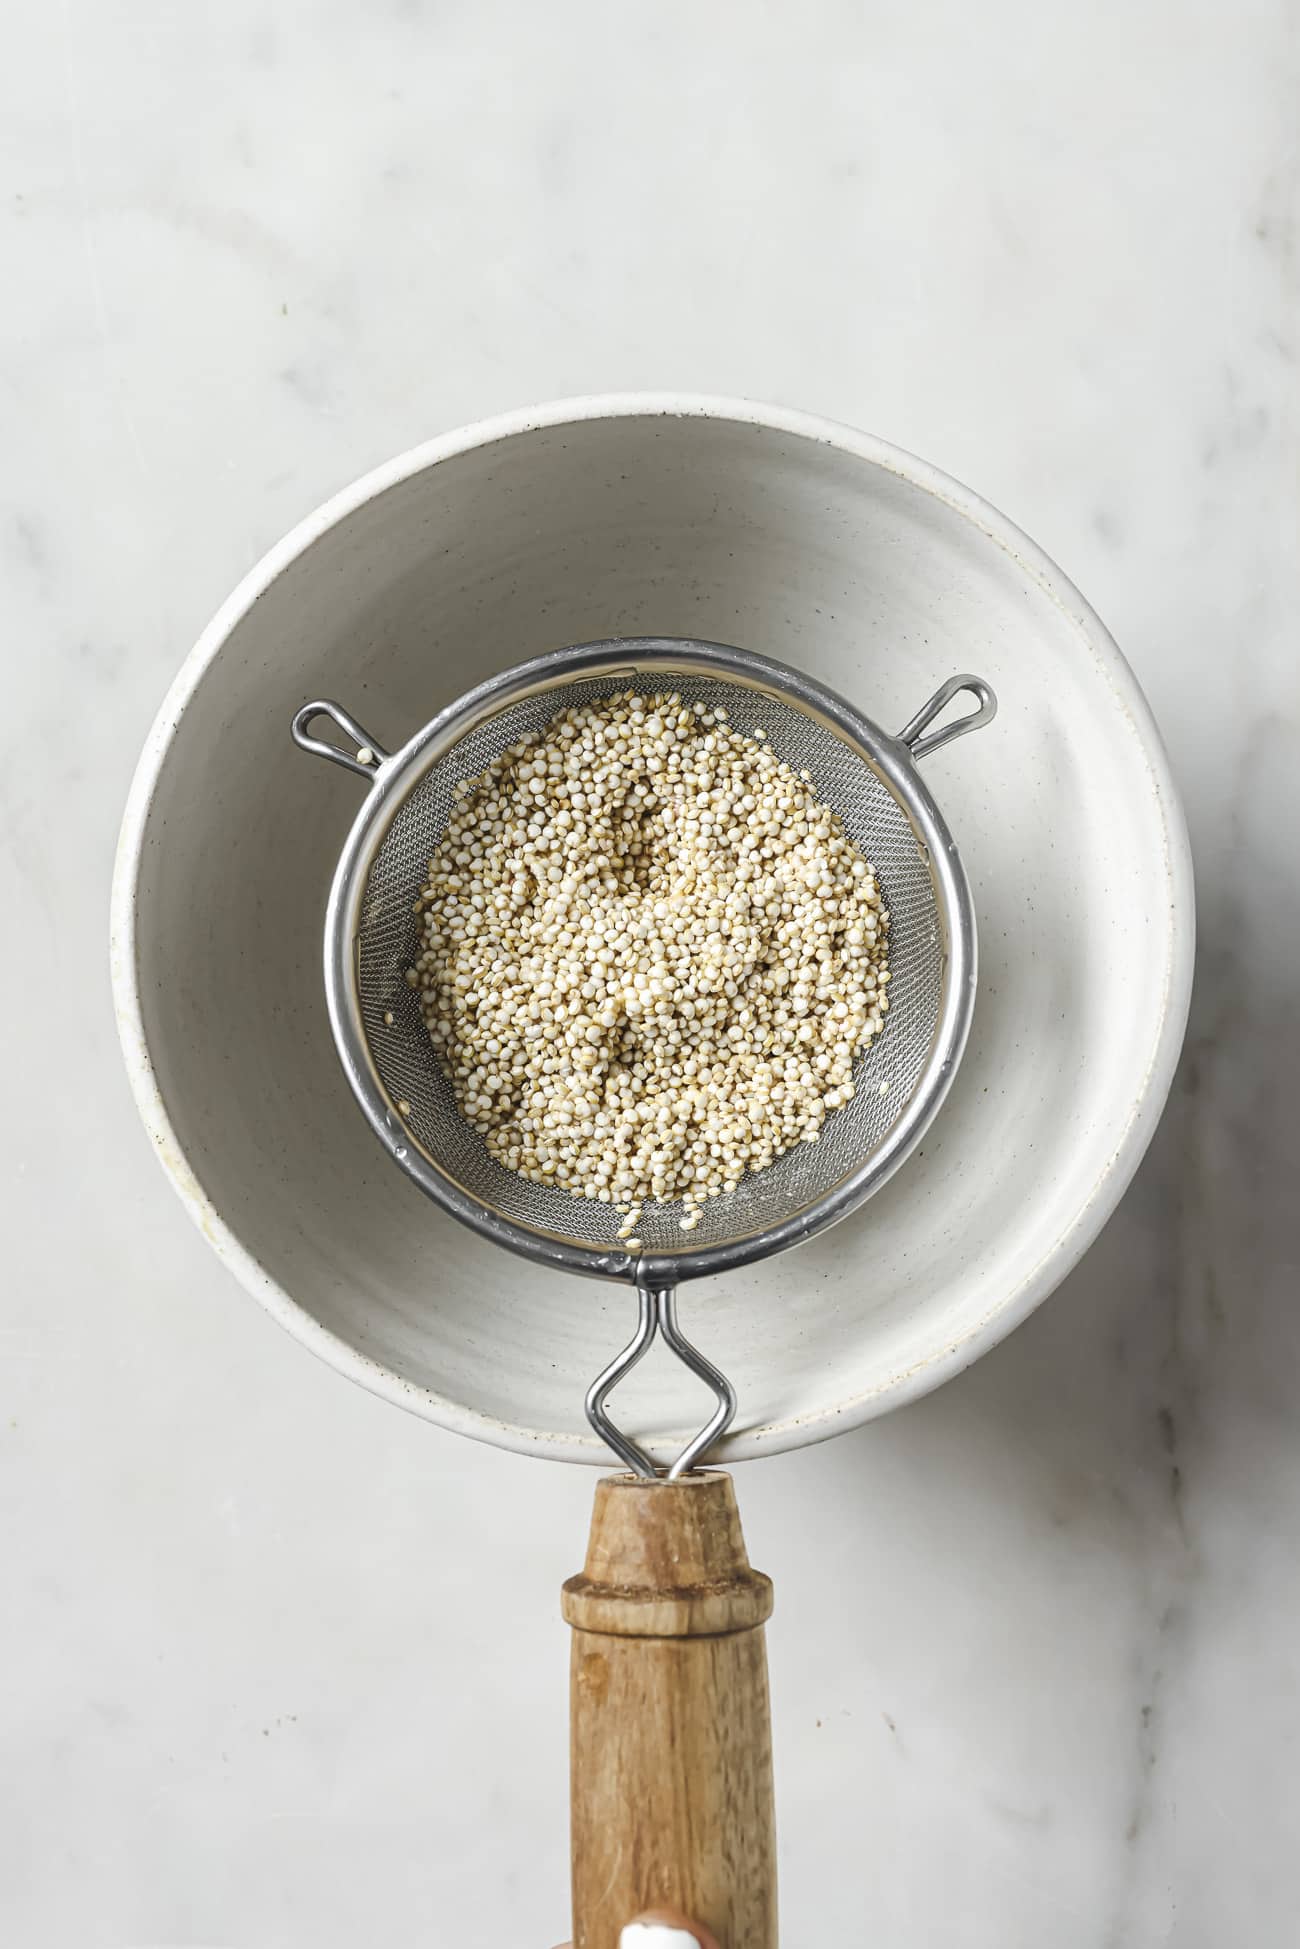 Uncooked quinoa in a fine mesh strainer over a white bowl. 